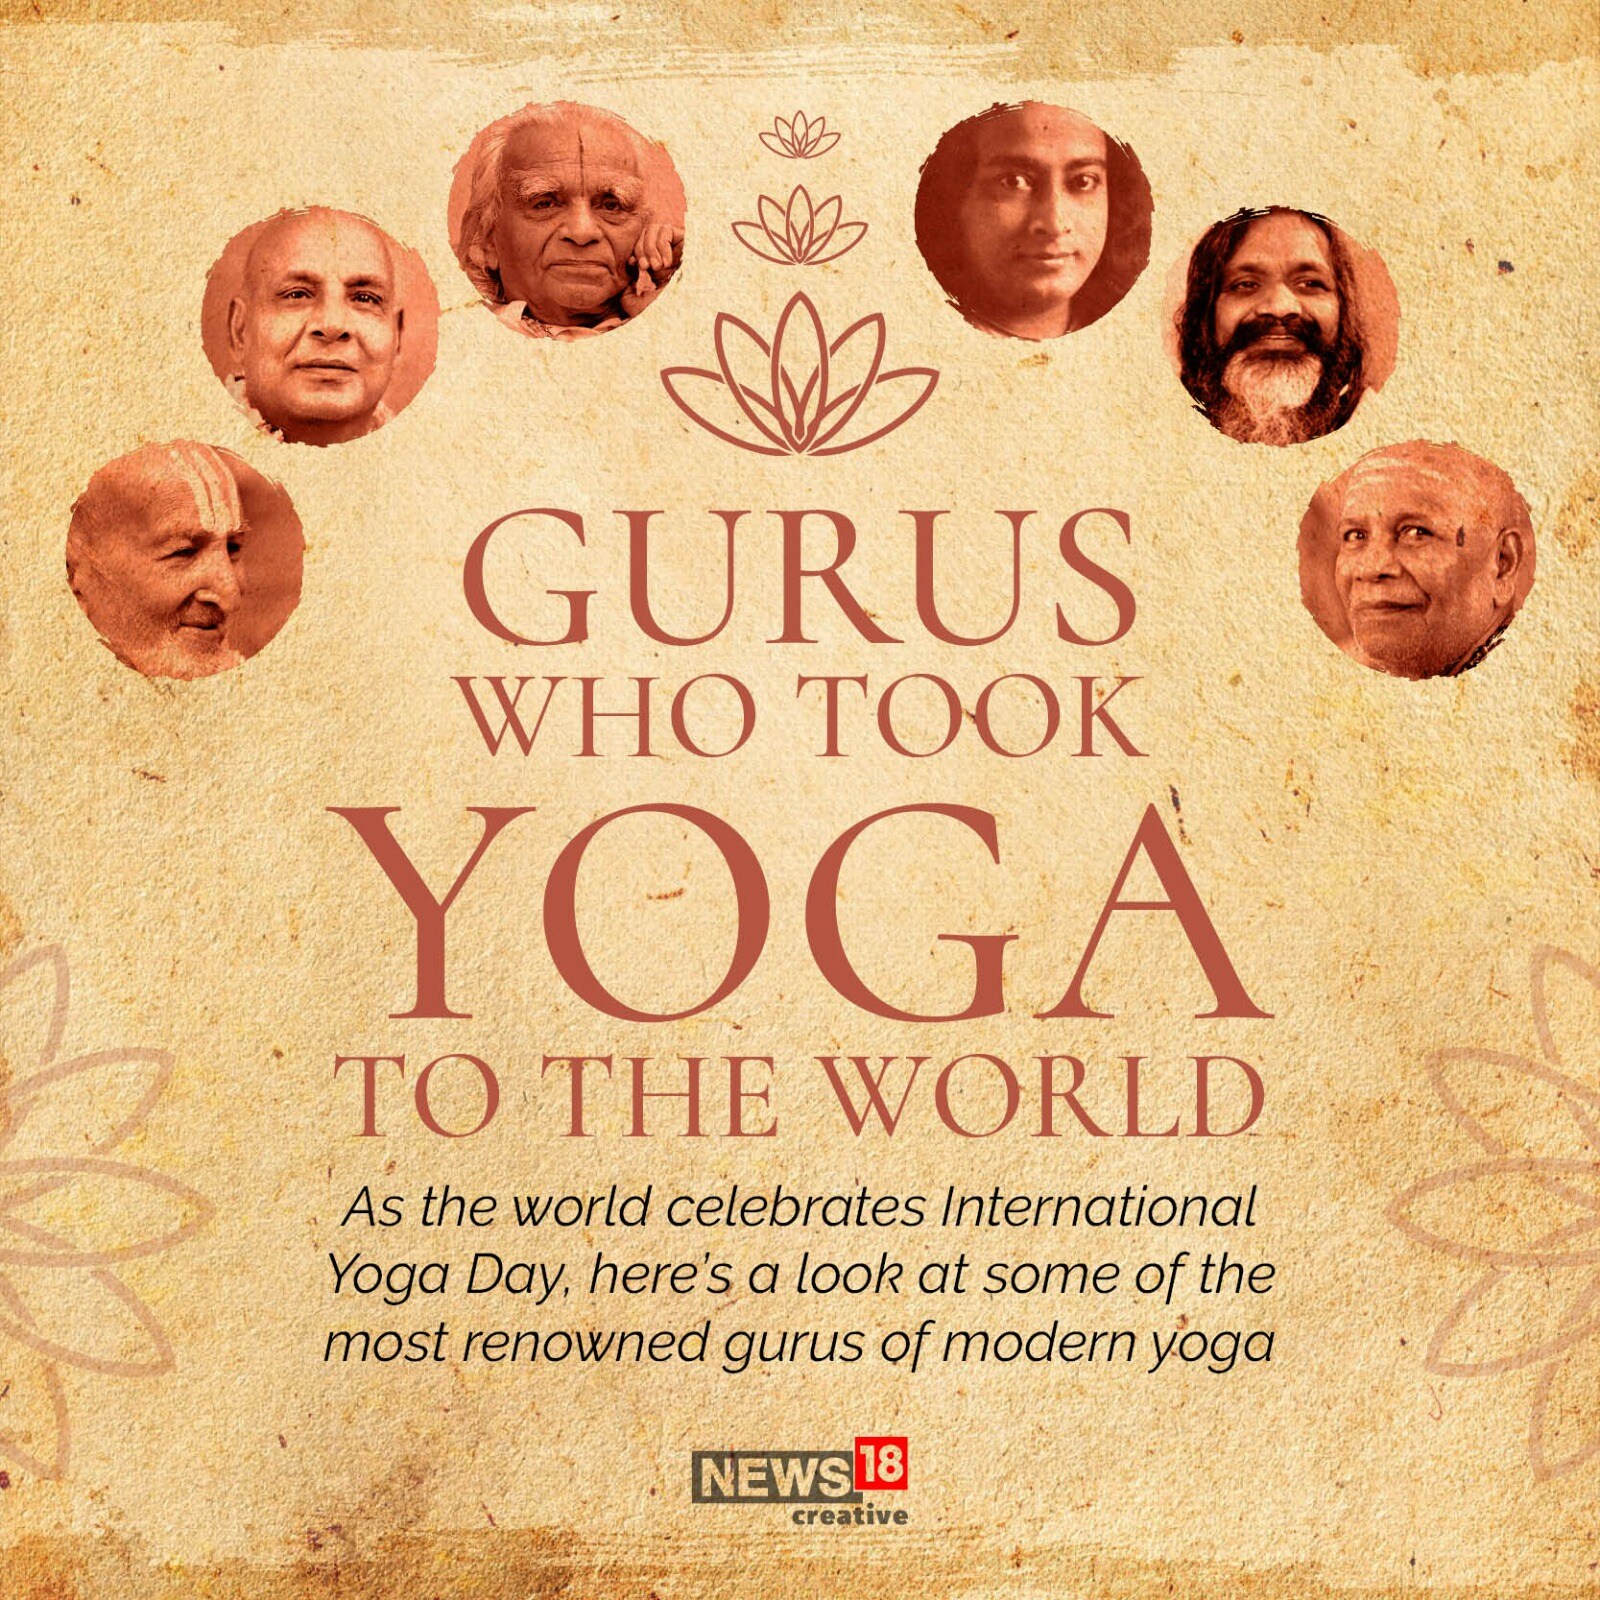 Gurus Who Took Yoga to the World